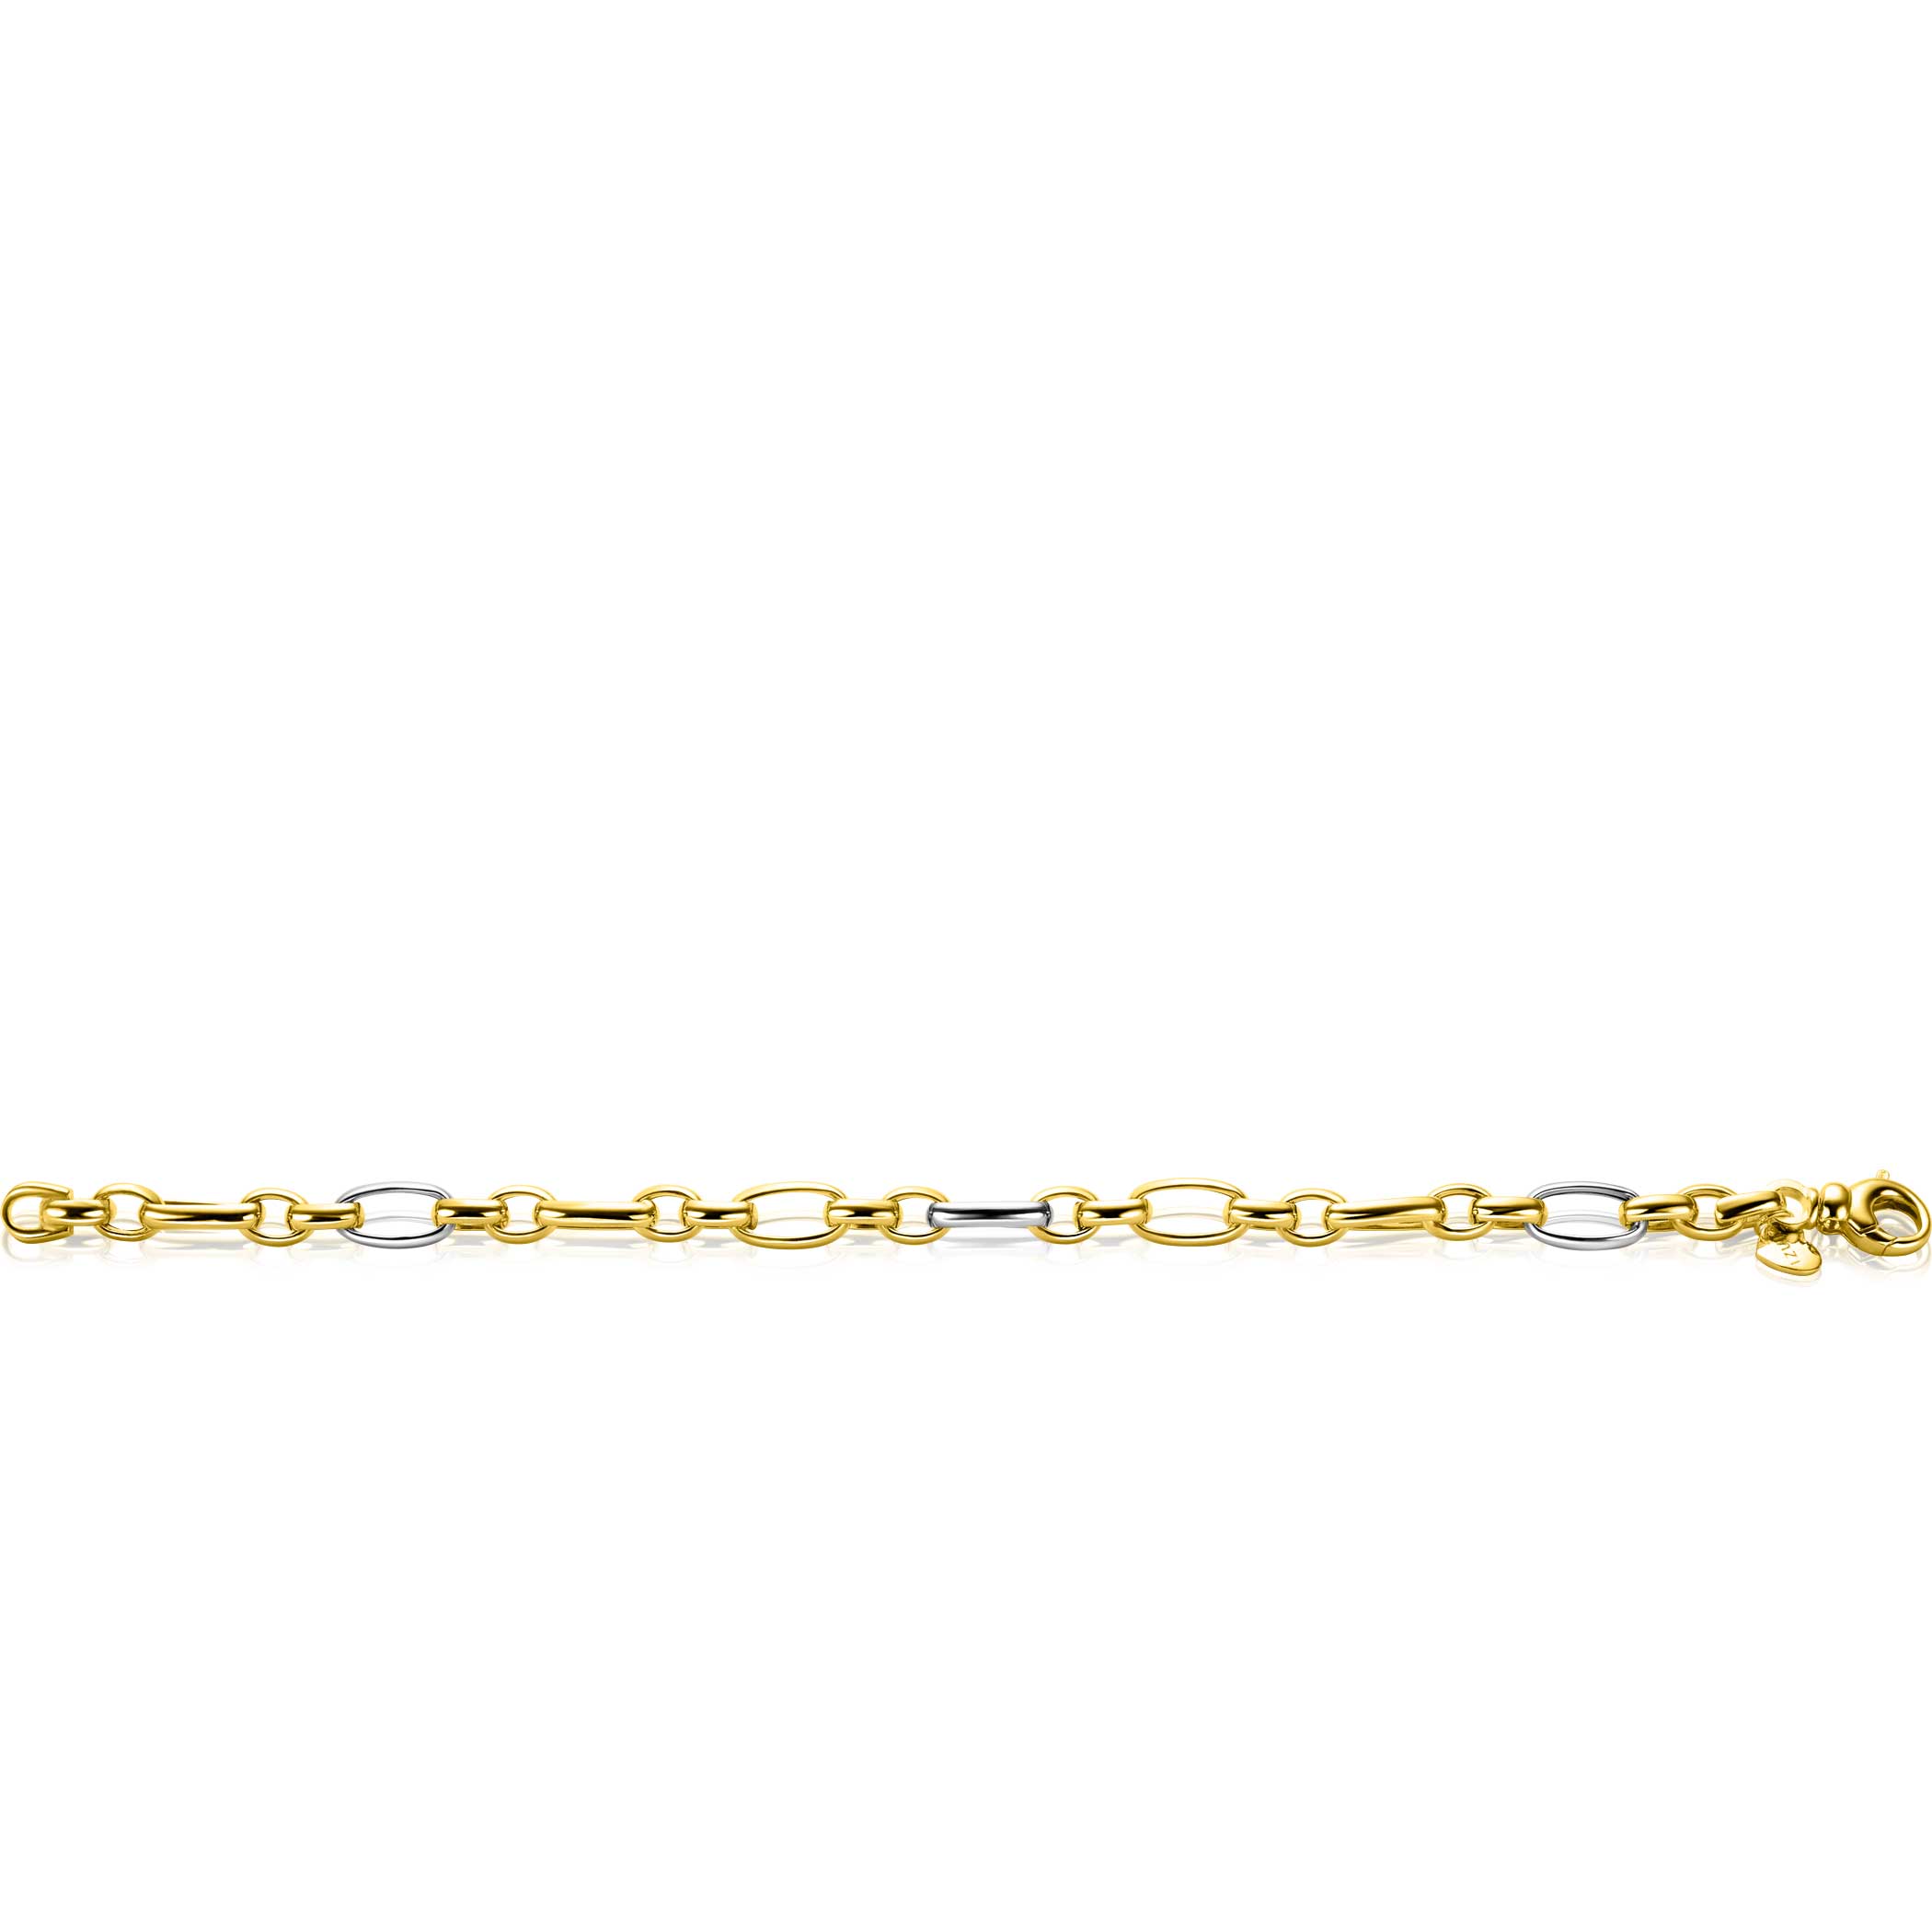 ZINZI bicolor schakelarmband (7mm breed) met afwisselend gold plated jasseron schakels en grote zilveren ovale schakels 19cm ZIA2639